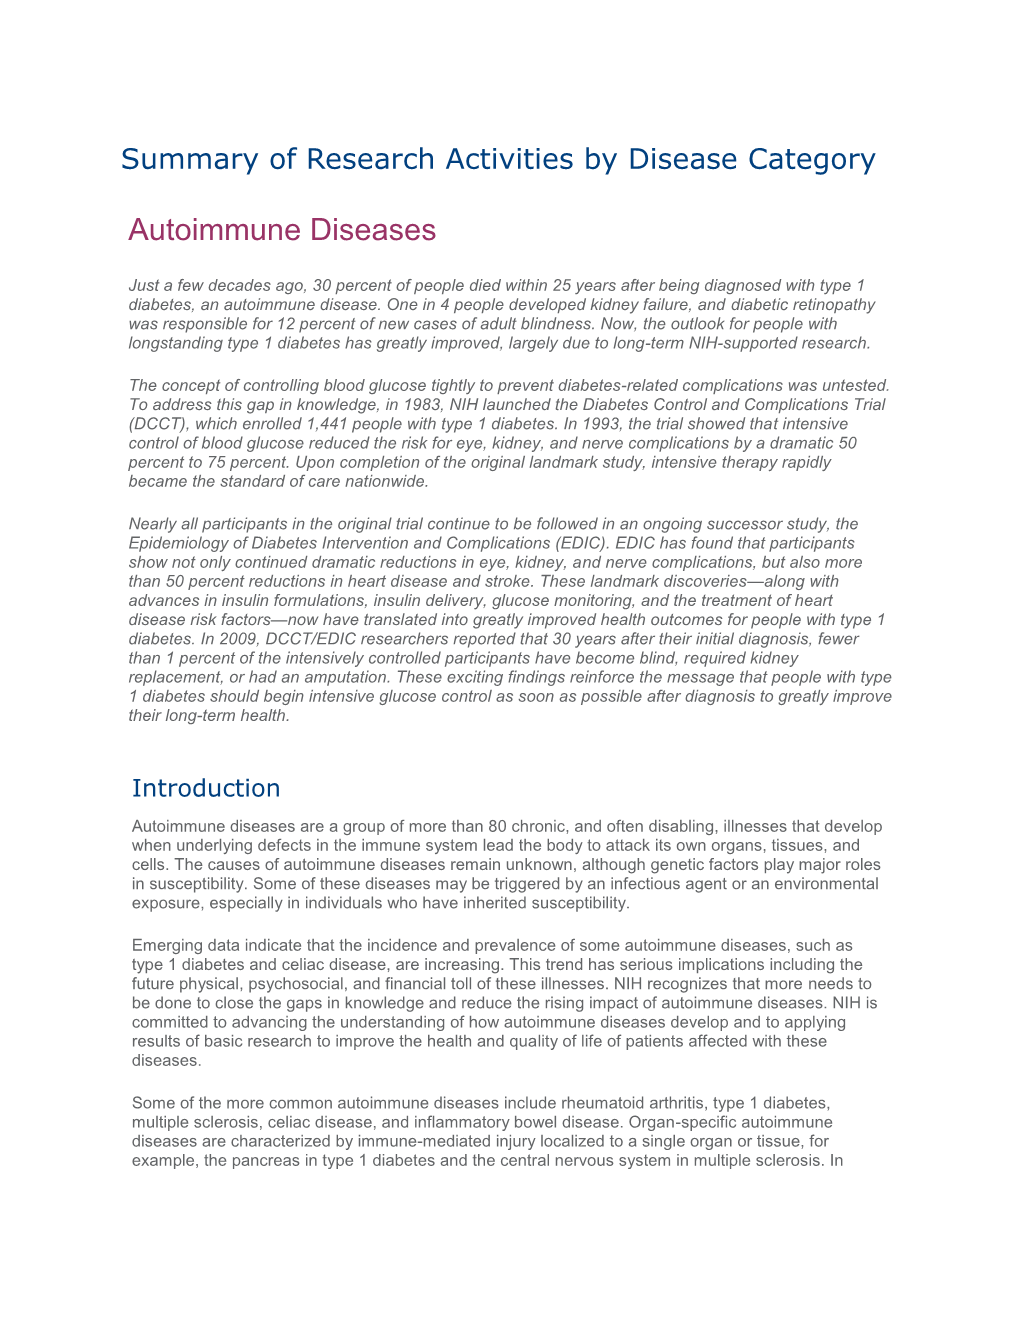 NIH Biennial Report 2008-2009 Autoimmune Diseases